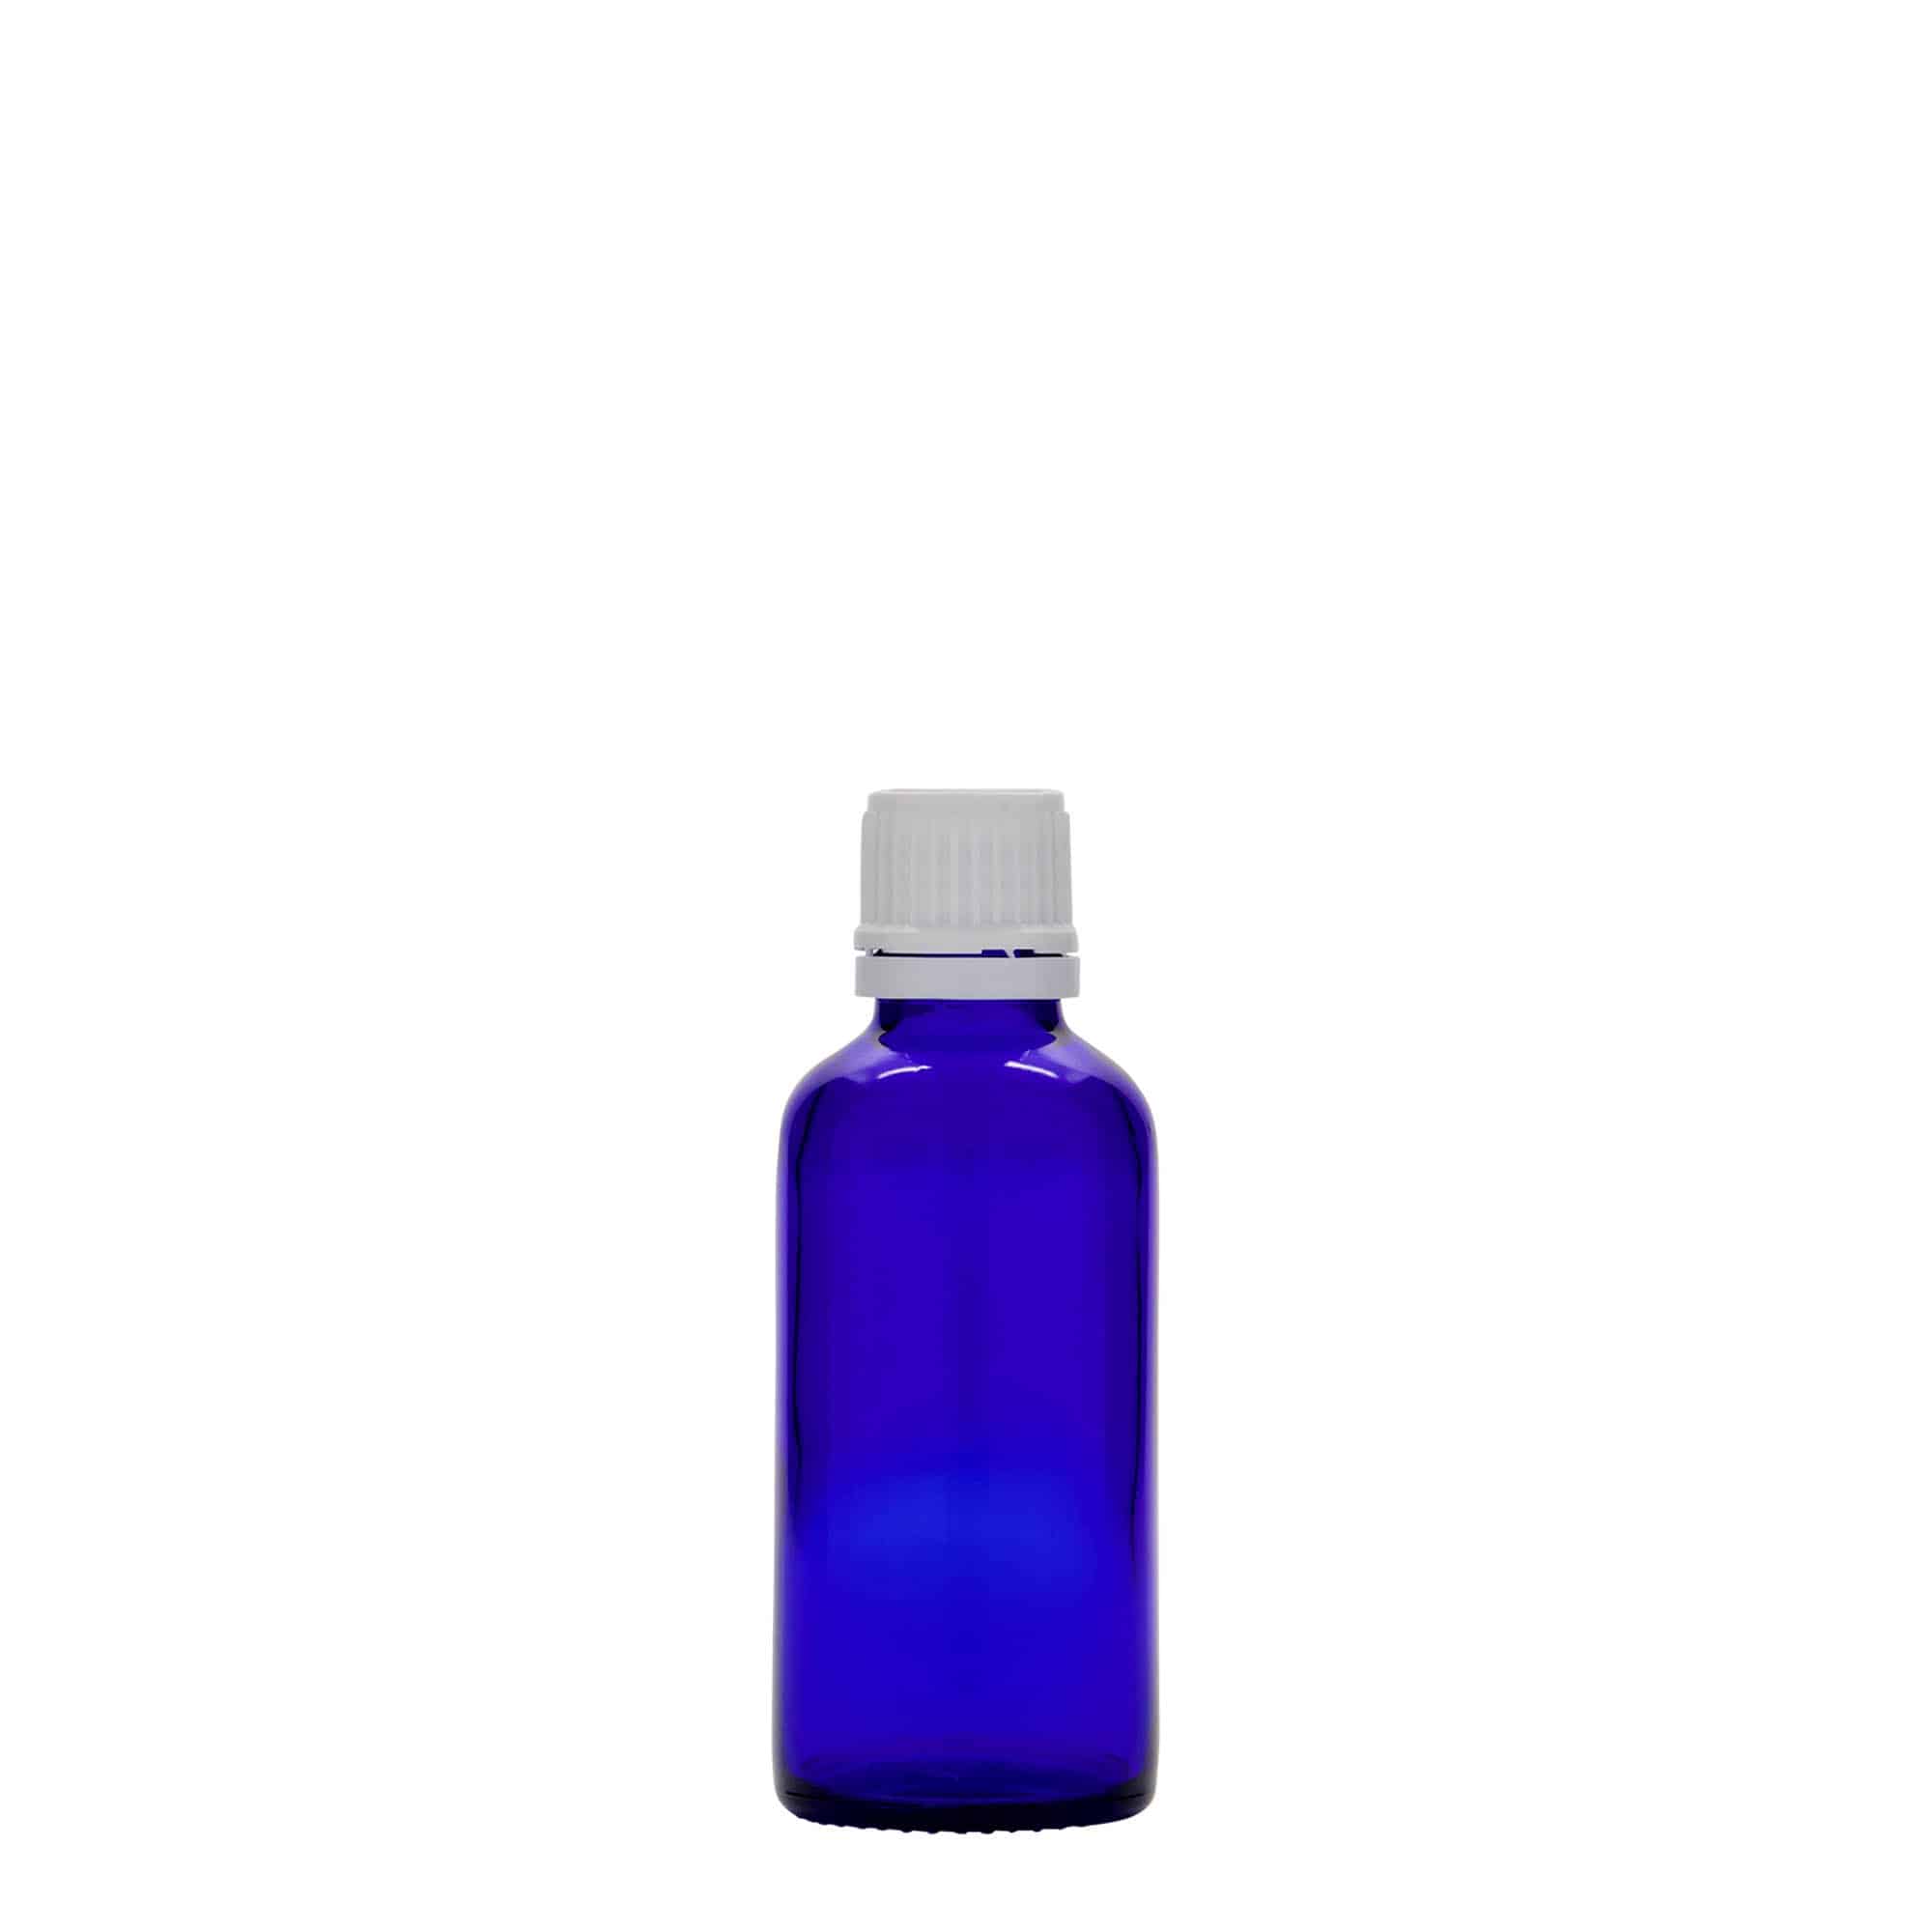 50 ml butelka farmaceutyczna, szkło, kolor błękit królewski, zamknięcie: DIN 18